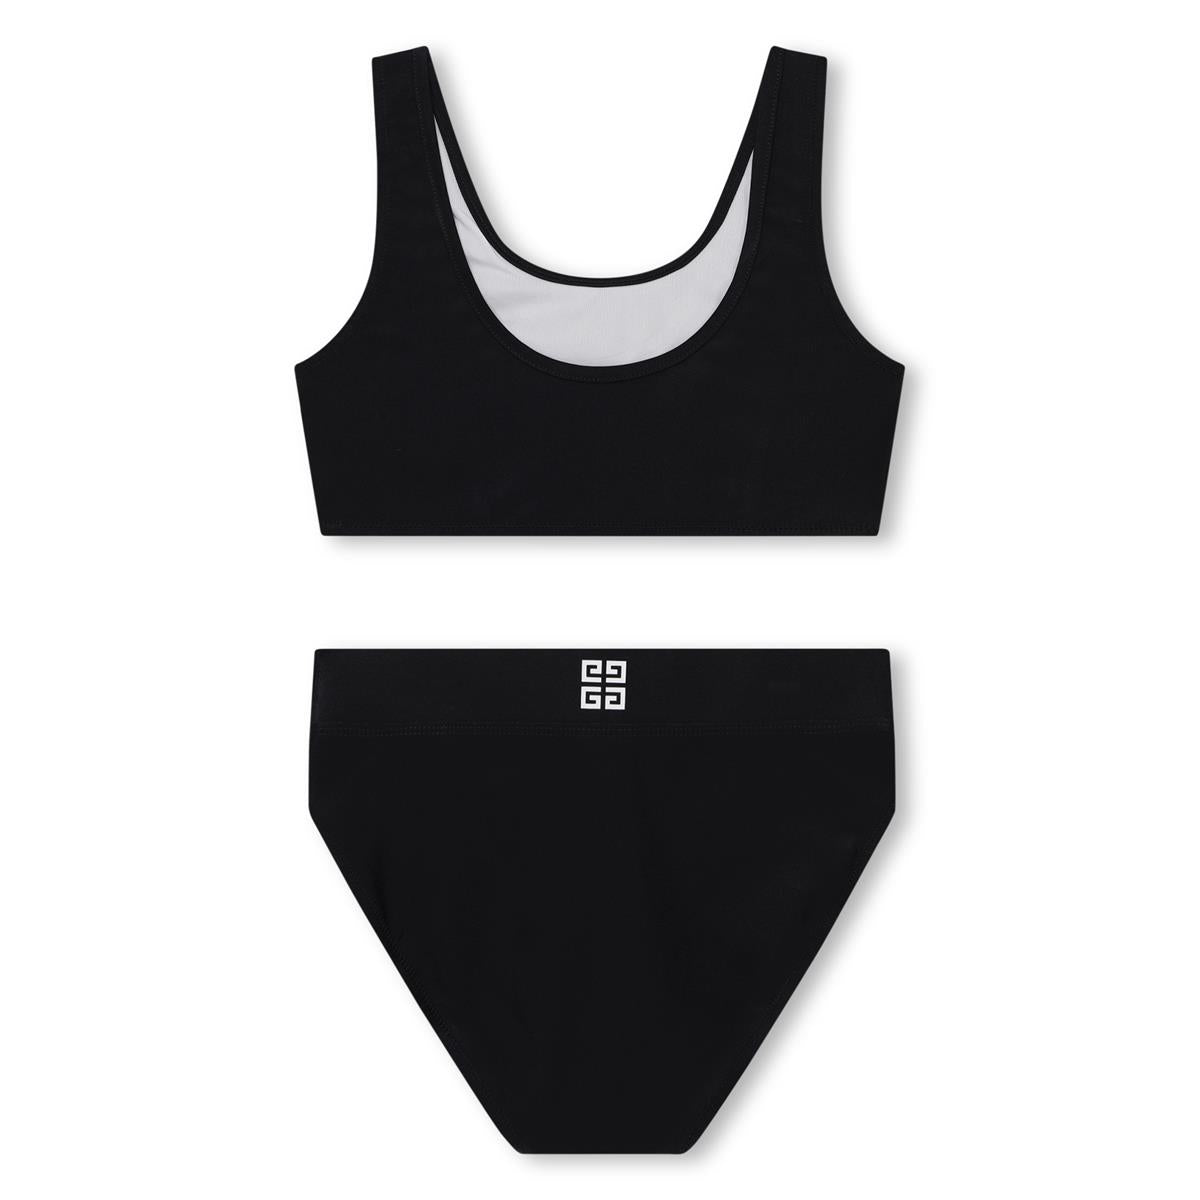 Girls Black Logo Swimsuit